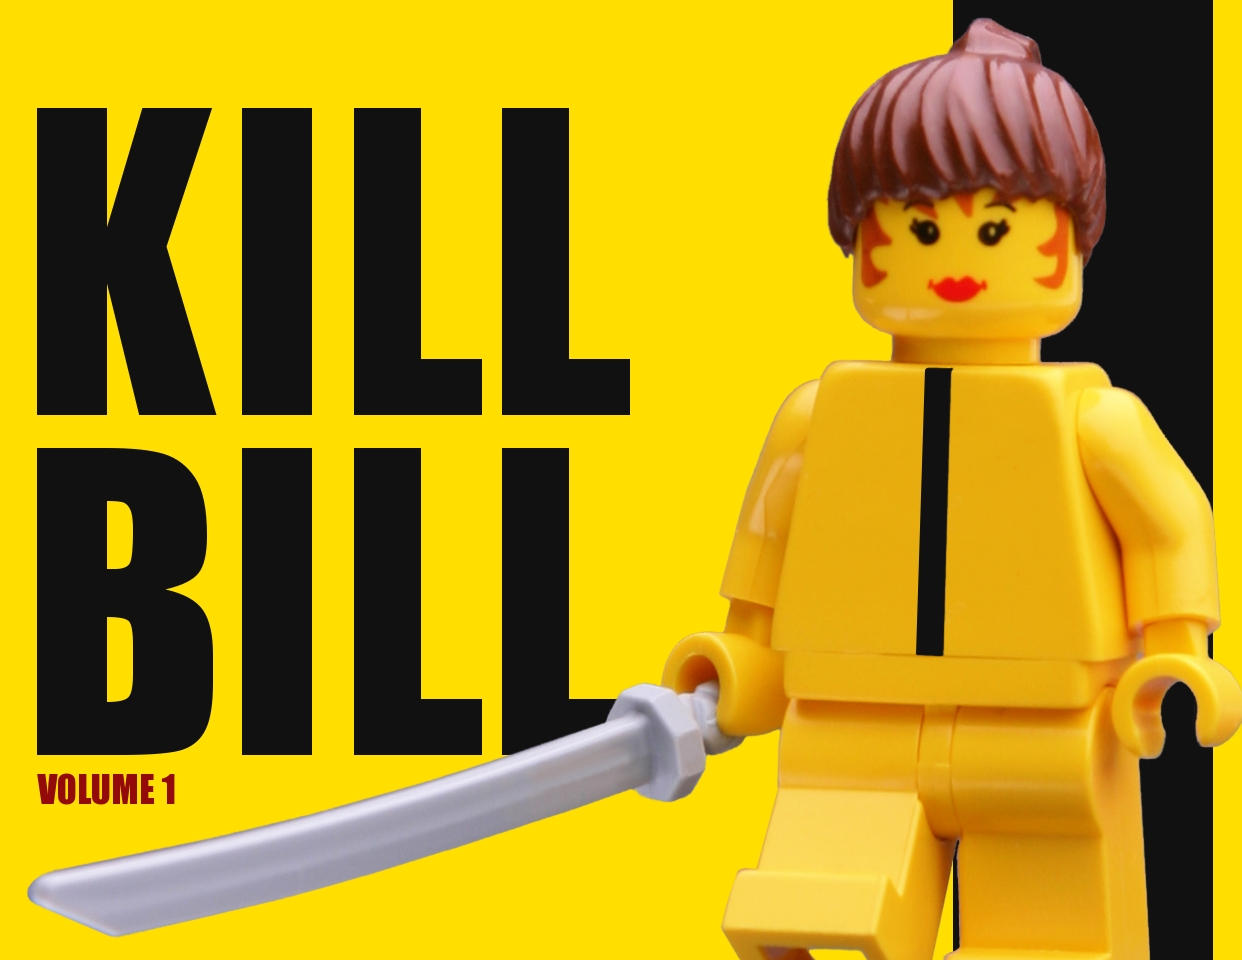 Lego Kill Bill Volume One by halley